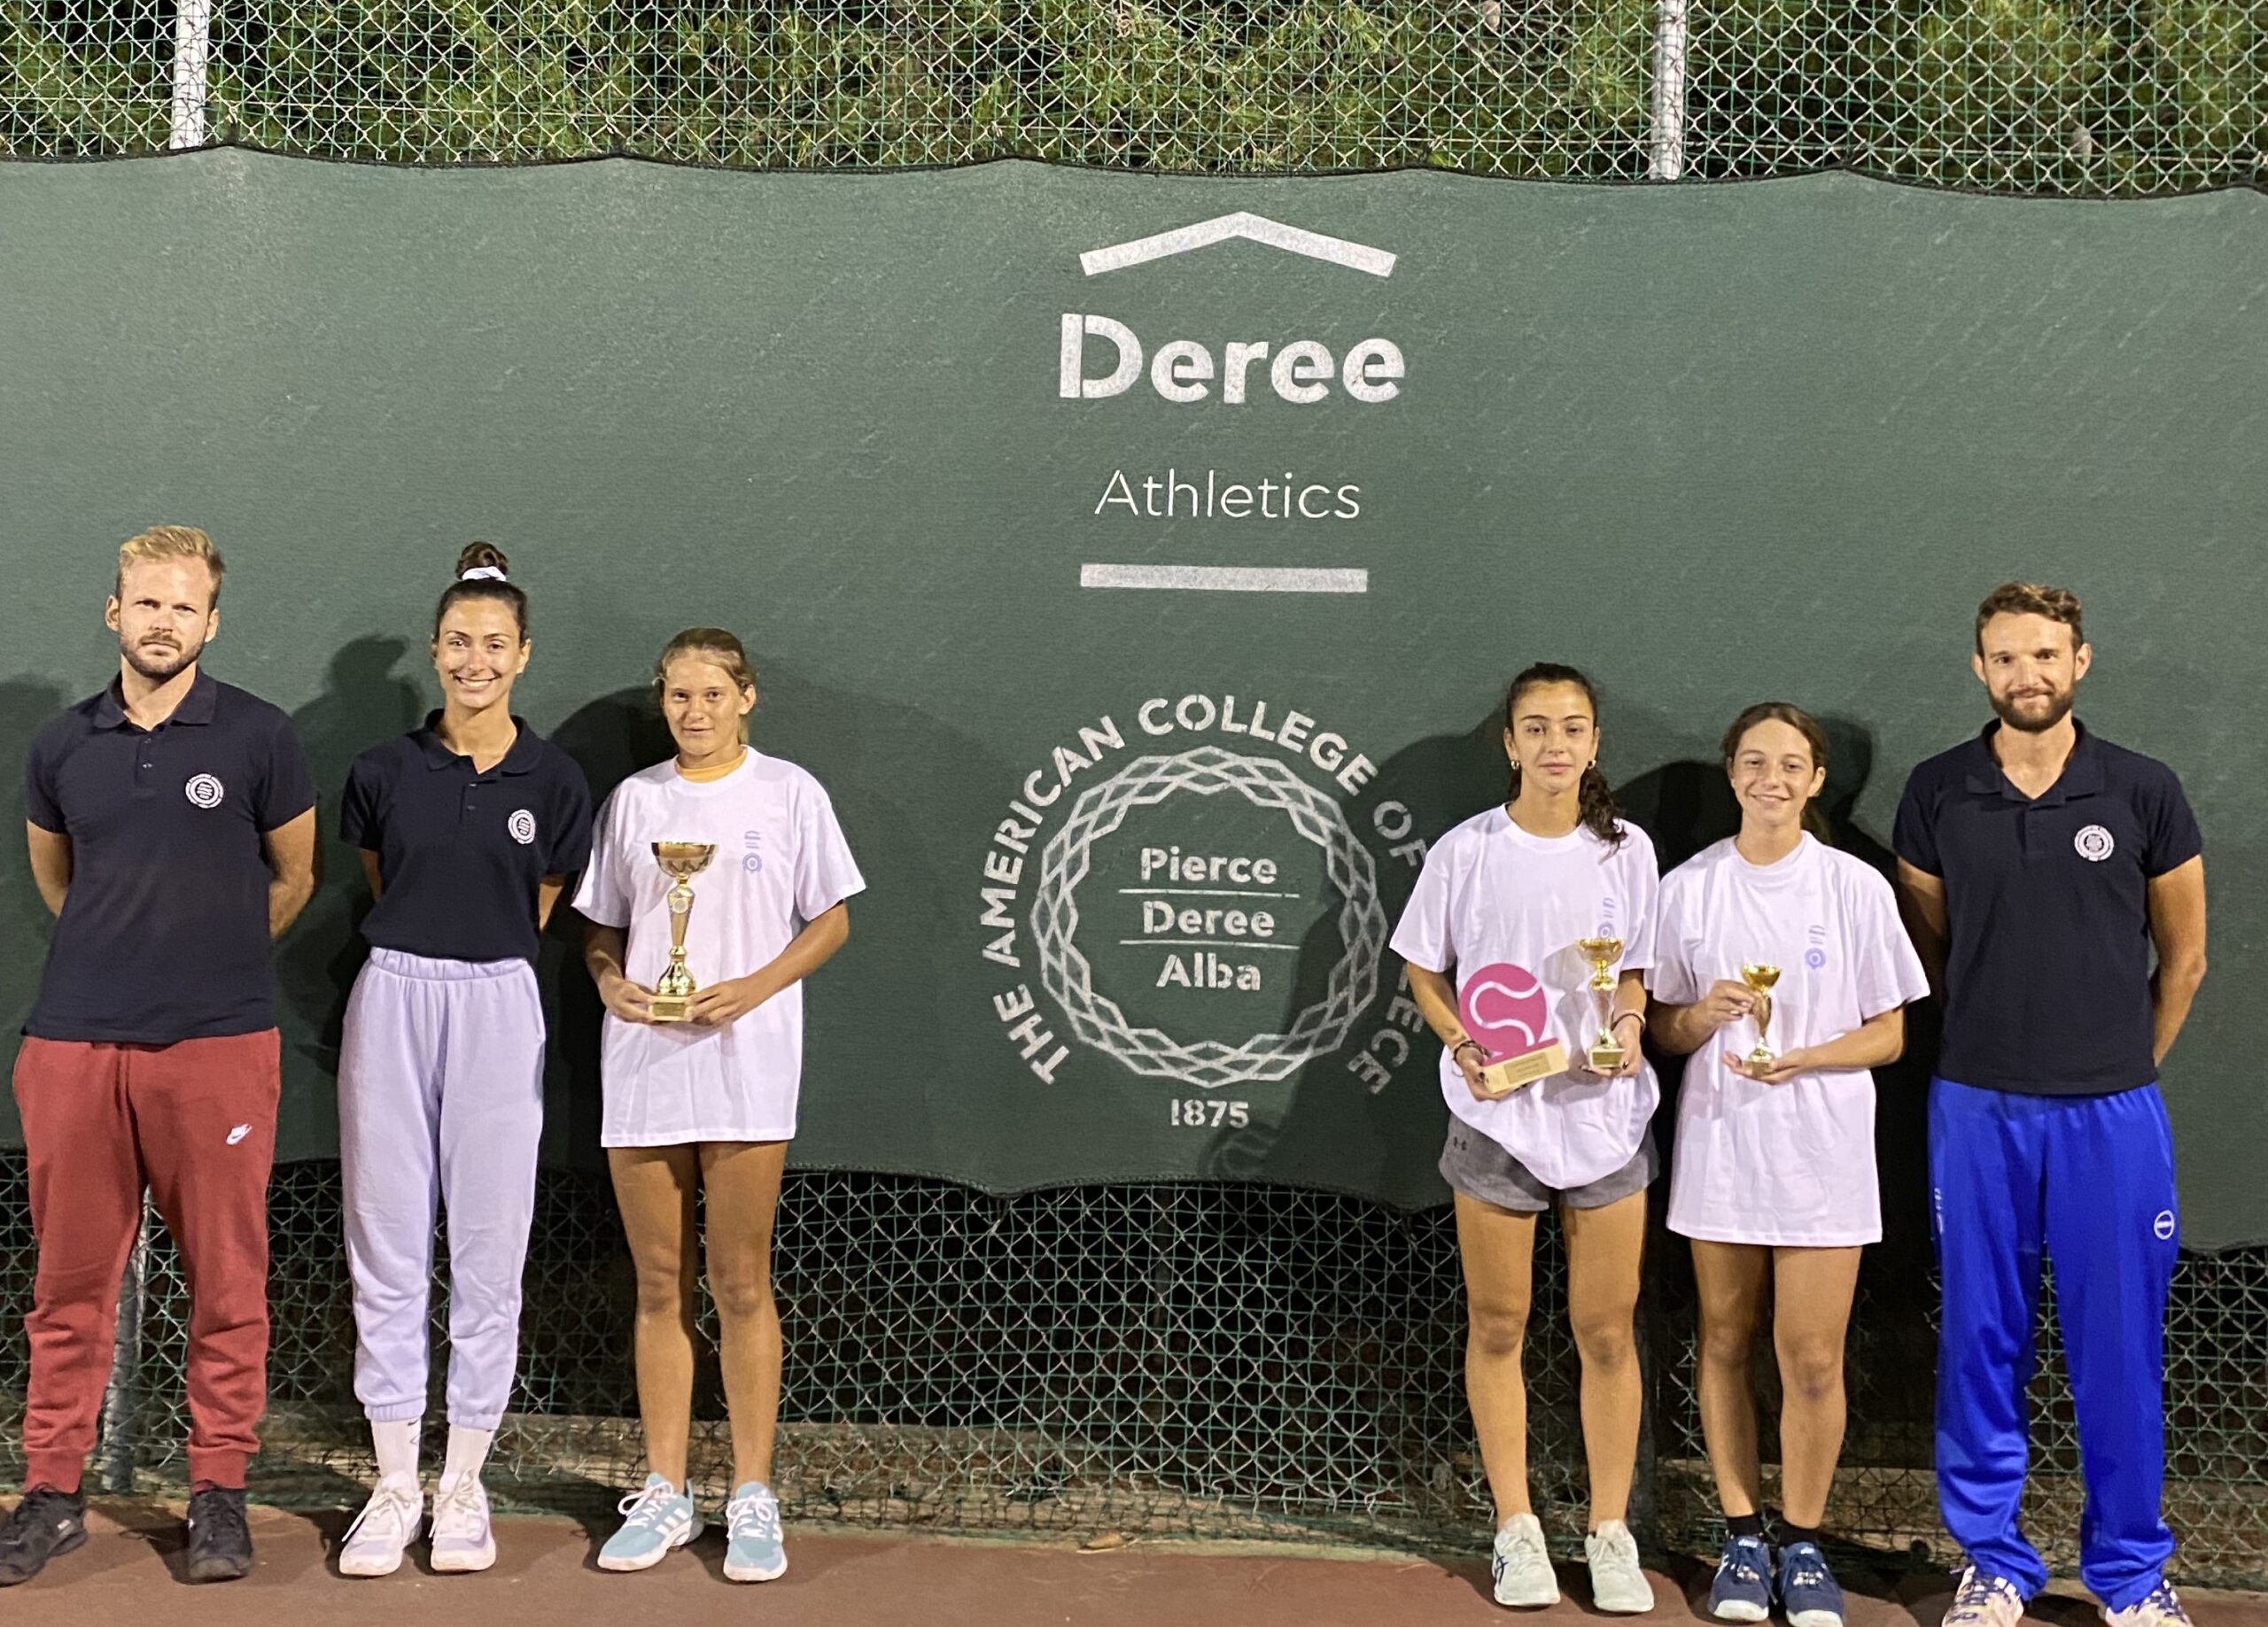 Εξαιρετικές εμφανίσεις για τους αθλητές της Deree Tennis Academy στα Ε2 πανελλαδικά τουρνουά σε Νάξο, Δράμα, και Χανιά!